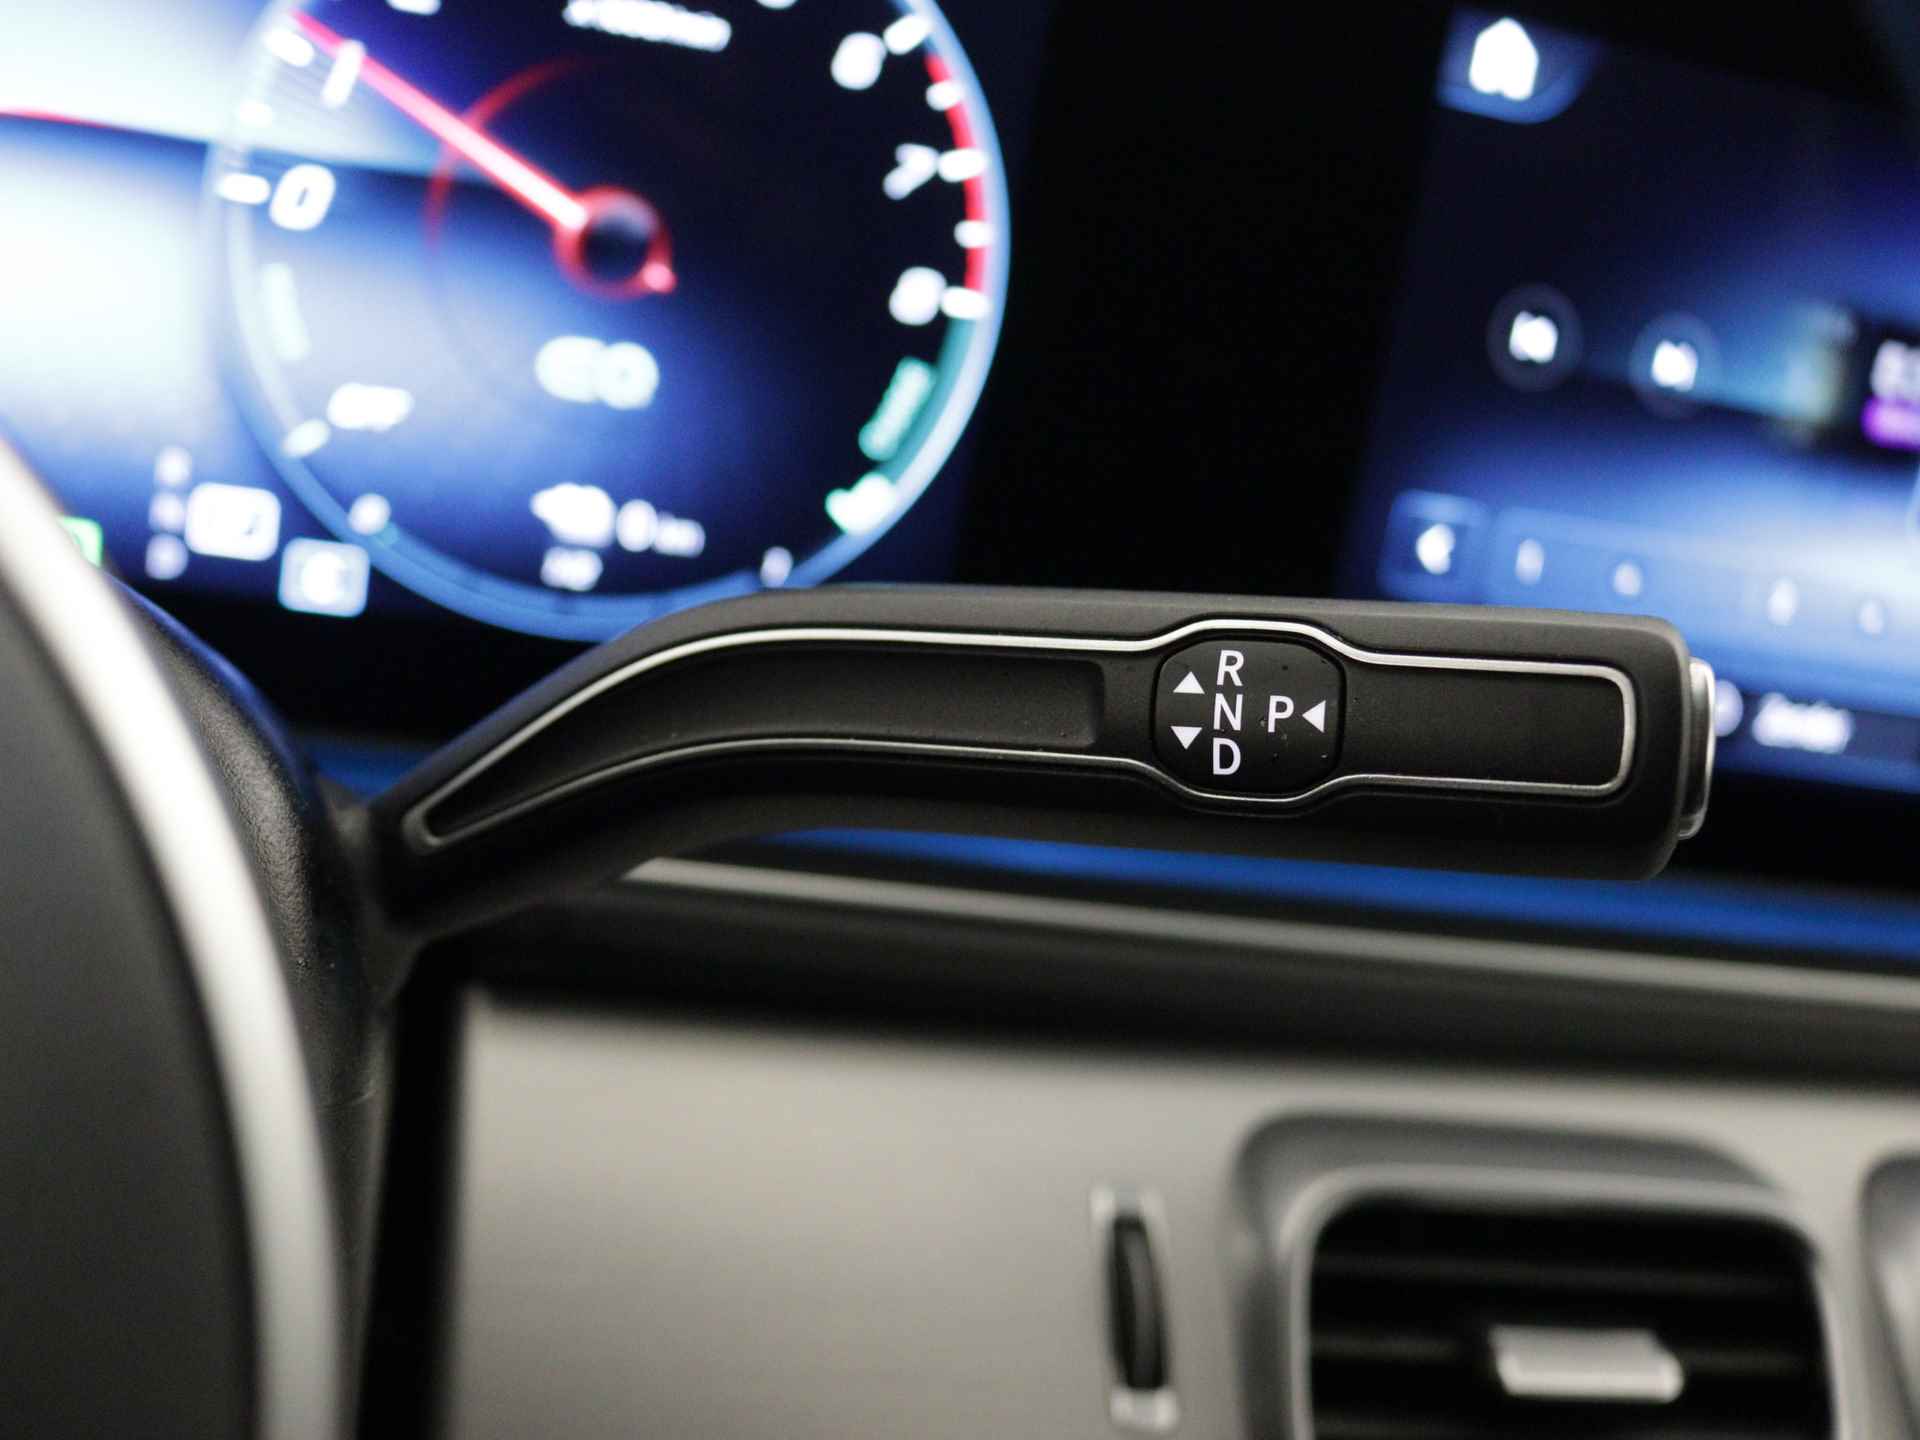 Mercedes-Benz GLE 350 e 4-MATIC AMG Nightpakket Limited 5 spaaks lichtmetalen velgen | Trekhaak | Airmatic | Treeplanken | Alarm klasse 3 |  Augmented Reality | sfeerverlichting | DAB | Parking support | inclusief 24 maanden MB Certified garantie voor europa - 25/45